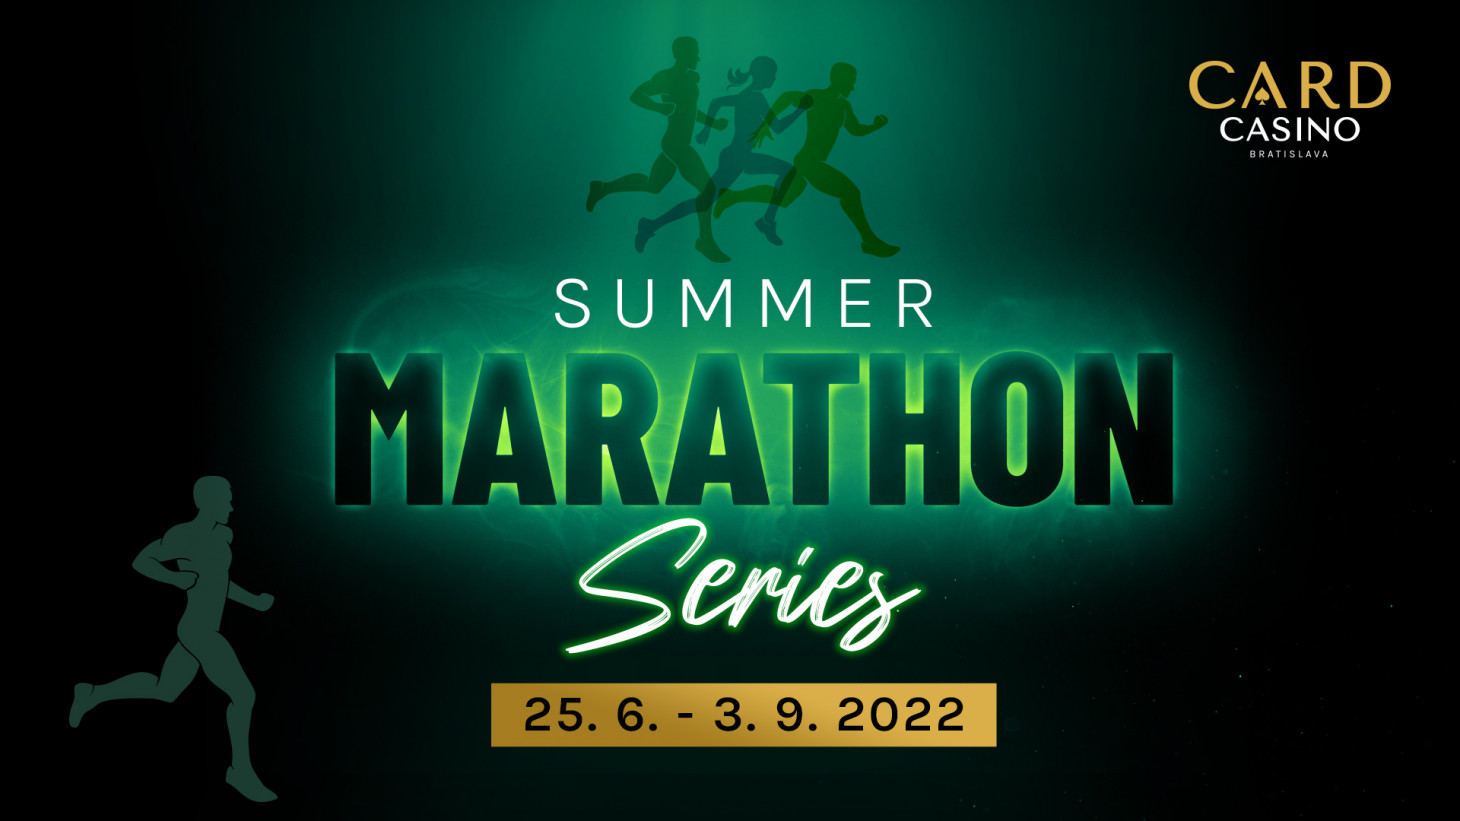 Die MARATHON Summer Series bringt Turniere mit einer Gesamtgarantie von 230.000 €!